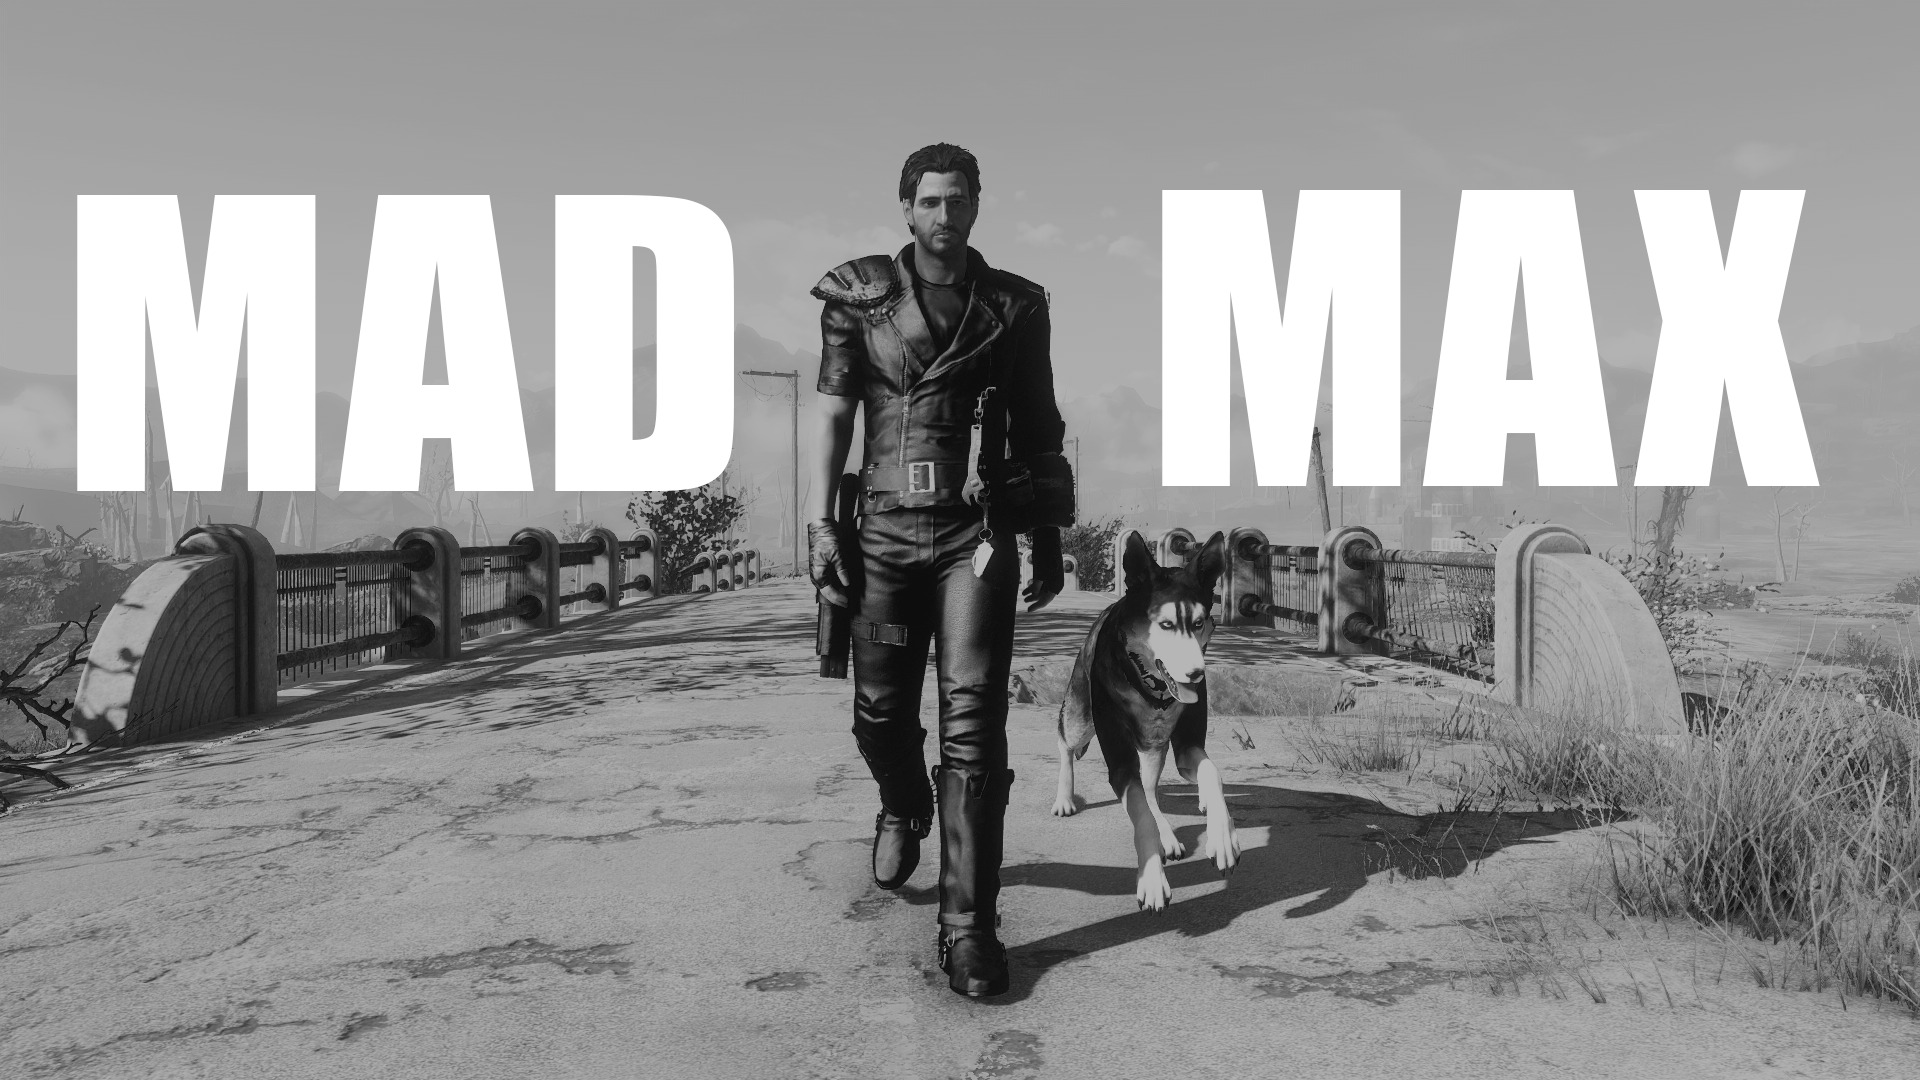 マッドマックス おすすめmod順 Fallout4 Mod データベース